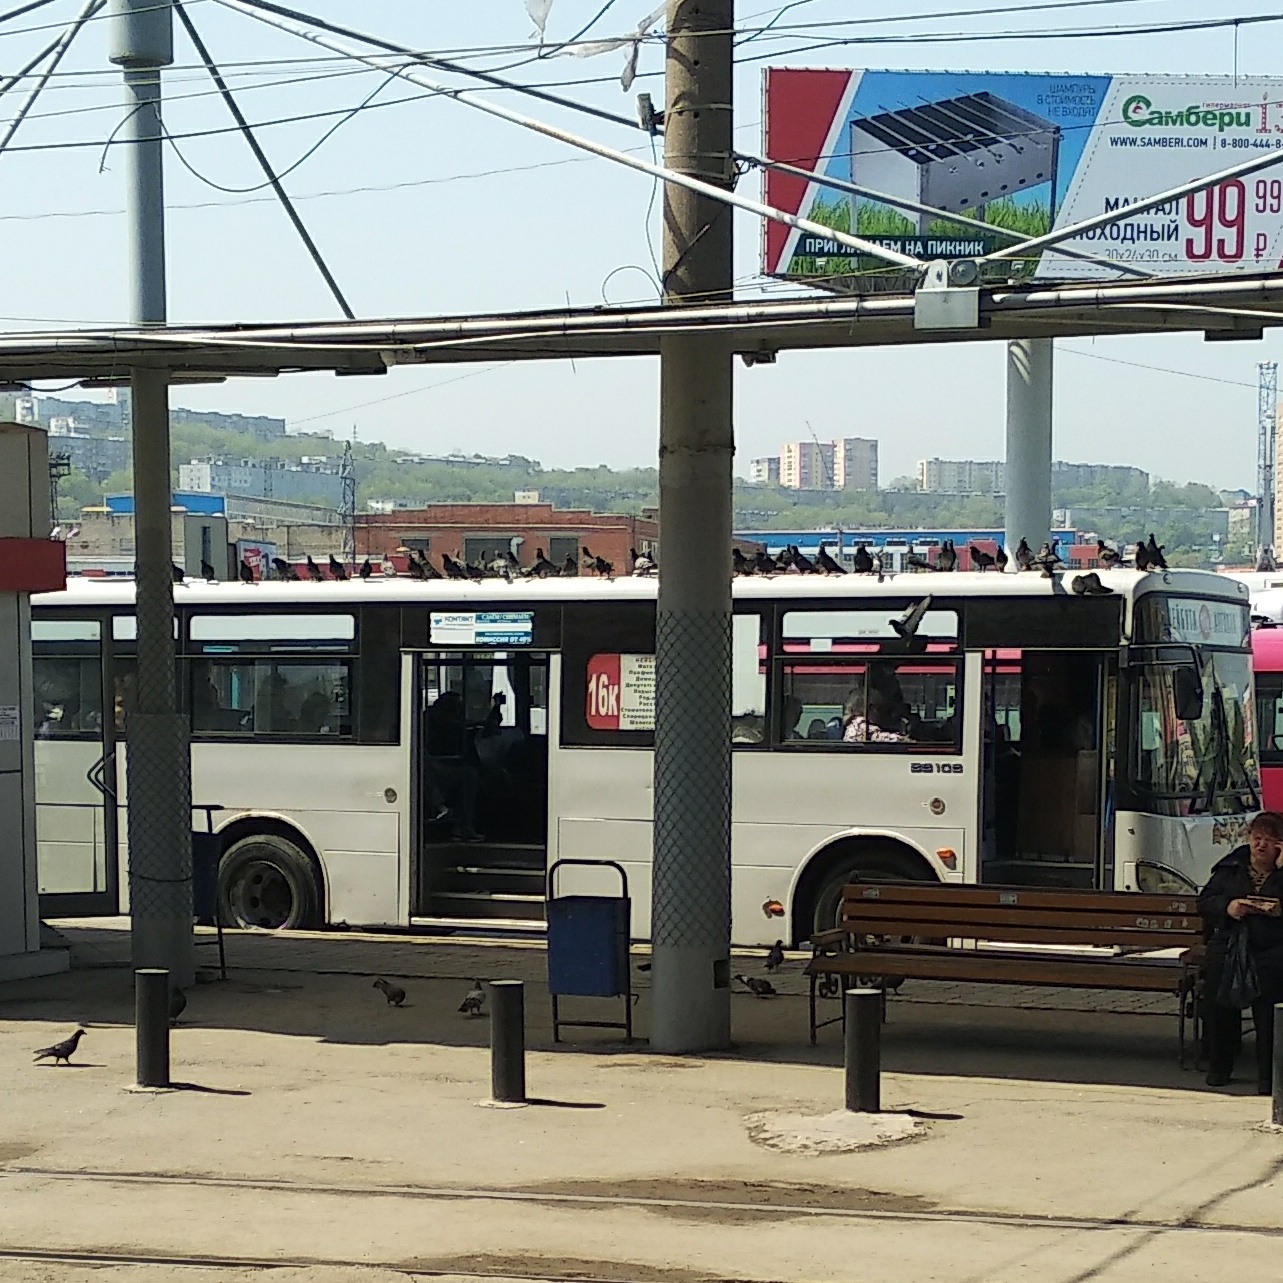 Автобус луга дзержинского. Голубь в автобусе. Автобус на Луговой Владивосток. Голуби в общественном транспорте фото. Автобусы Голубино фото.